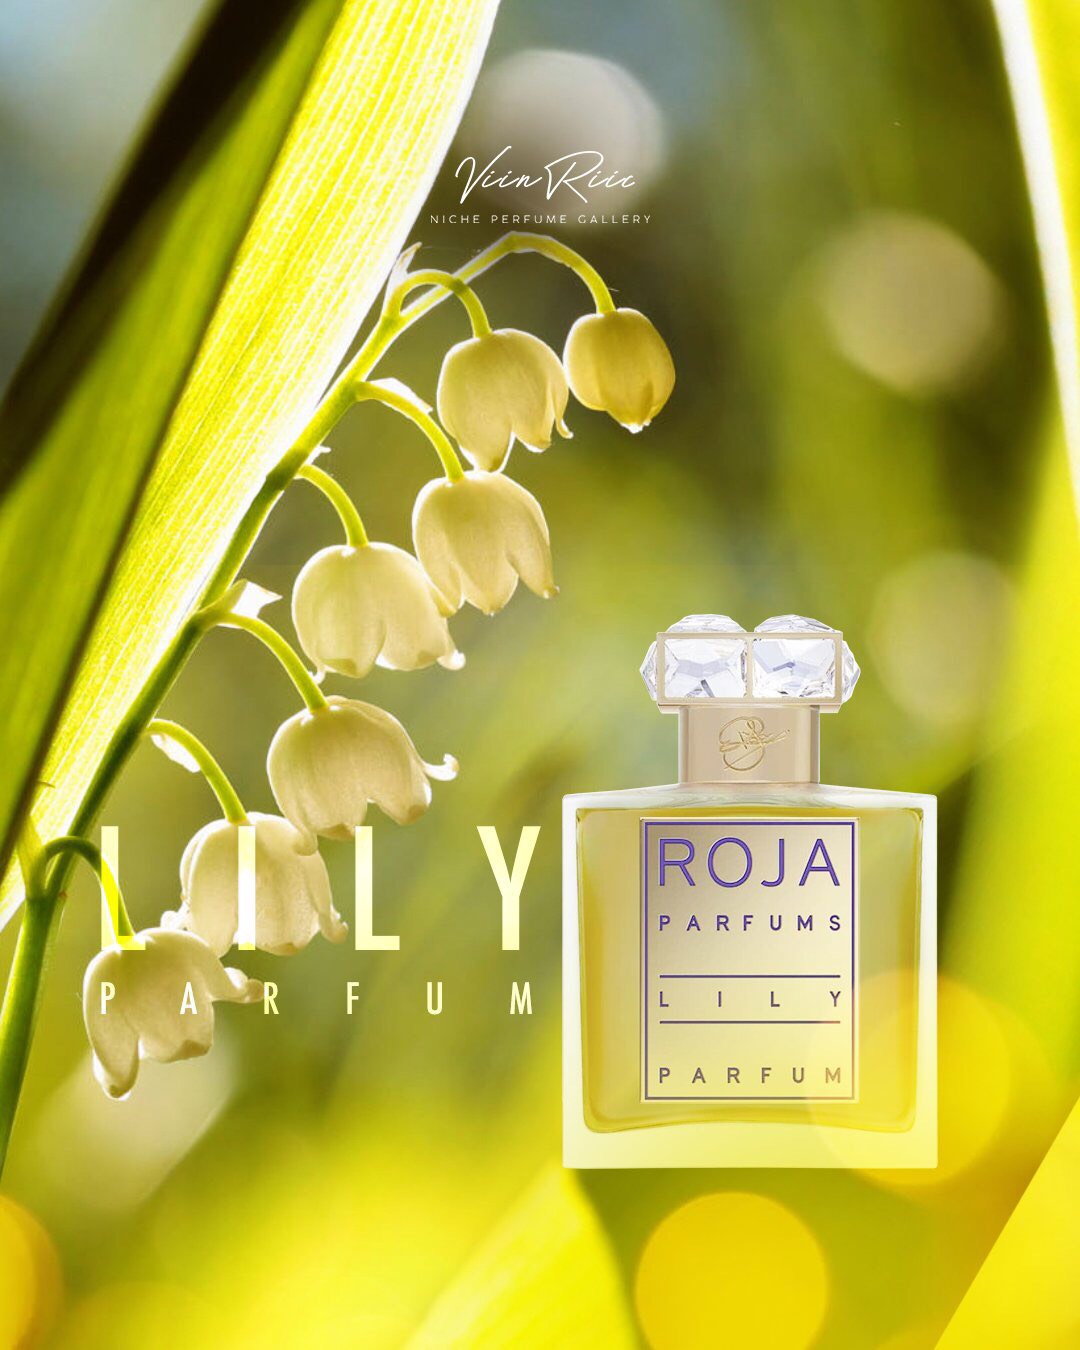 Lily ROJA Parfums kết tinh từi loài hoa sở hữu mùi hương may mắn